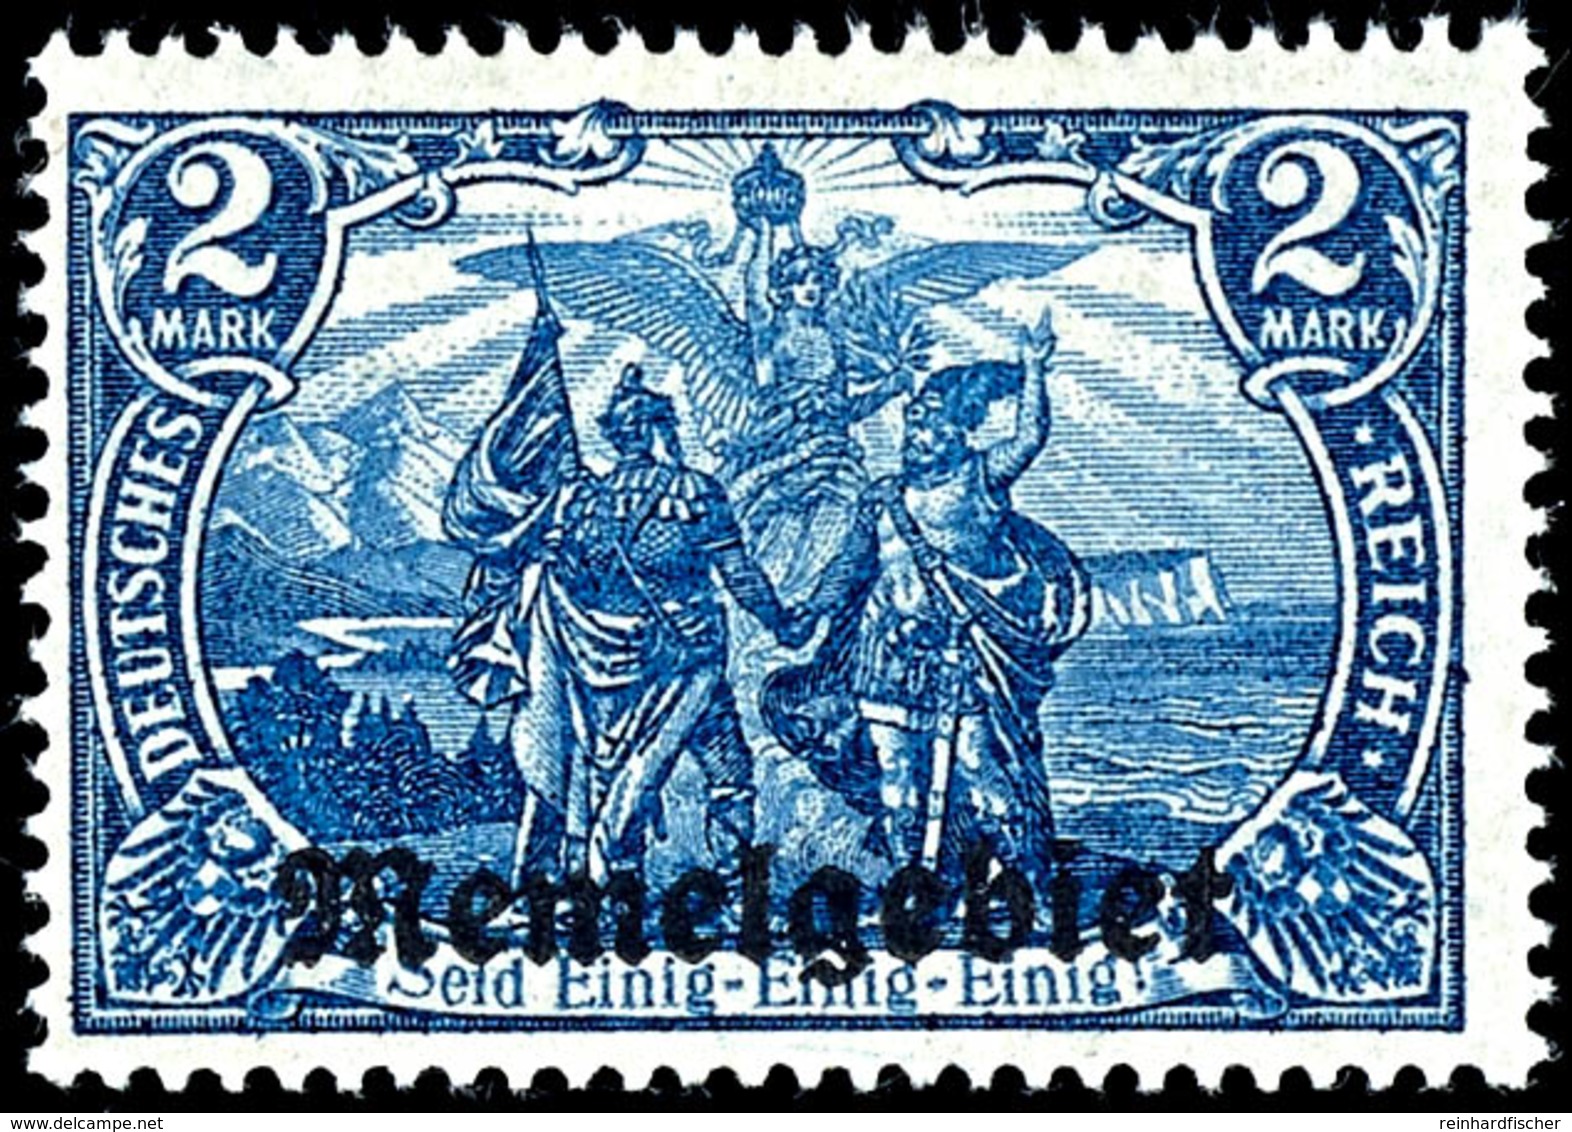 2 Mark Deutsches Reich Mit Aufdruck "Memelgebiet", Schwärzlichblau,  Tadellos Ungebraucht Mit Originalgummierung, Fotobe - Klaipeda 1923